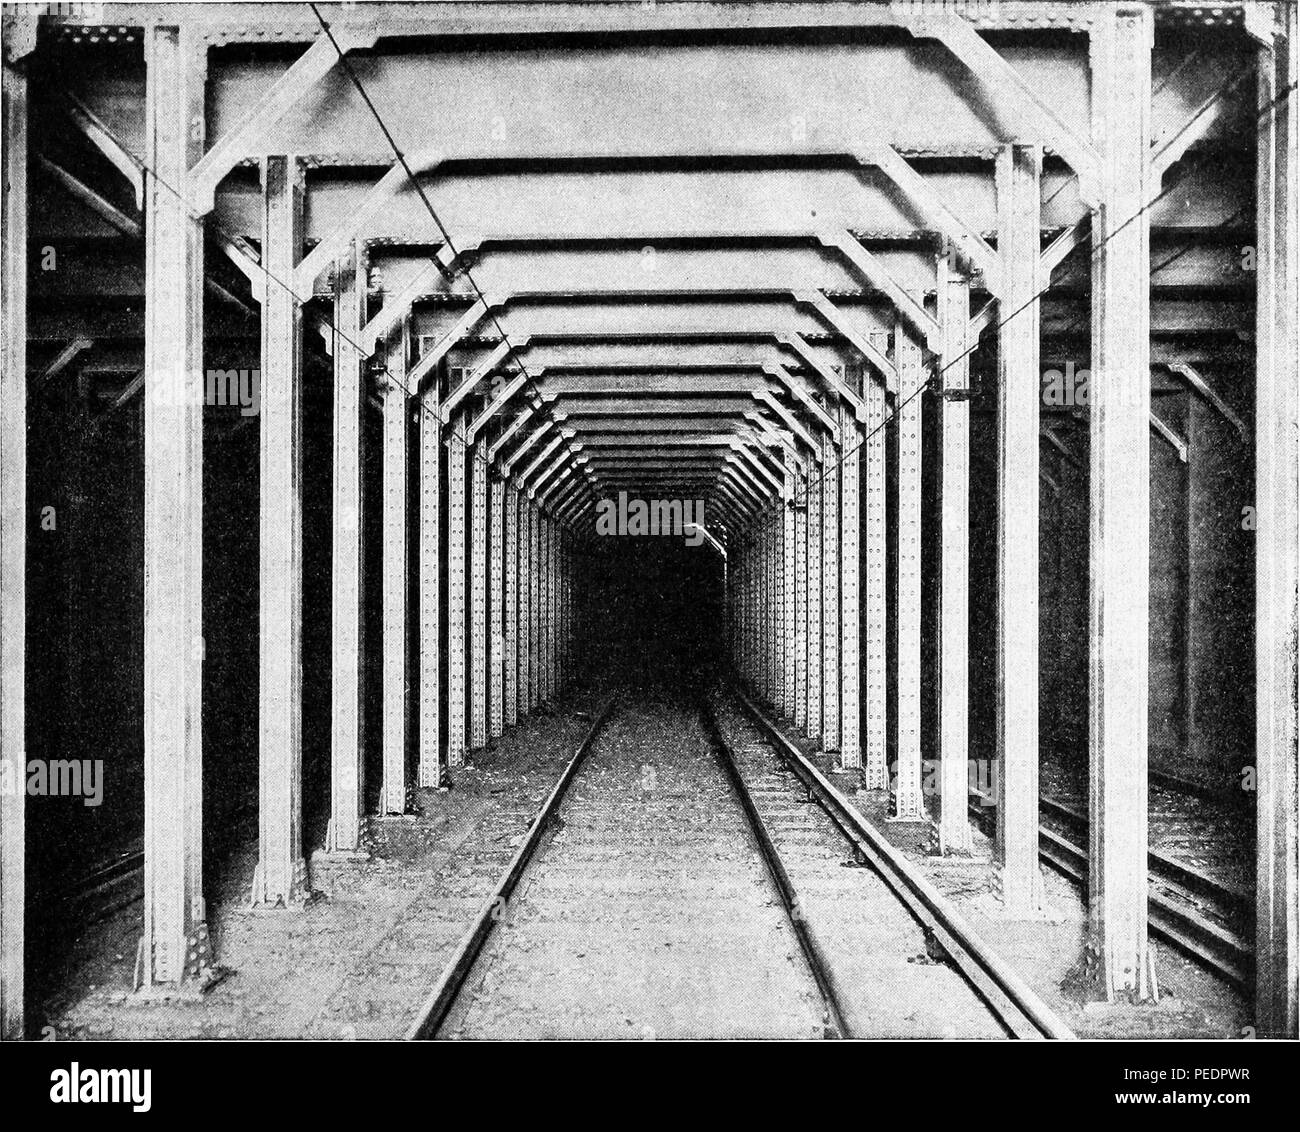 Photographie noir et blanc montrant les poutres et les poutres maîtresses en acier standard utilisé pour construire un tunnel du métro de la ville de New York au début du xxe siècle, 1884. Avec la permission de Internet Archive. () Banque D'Images